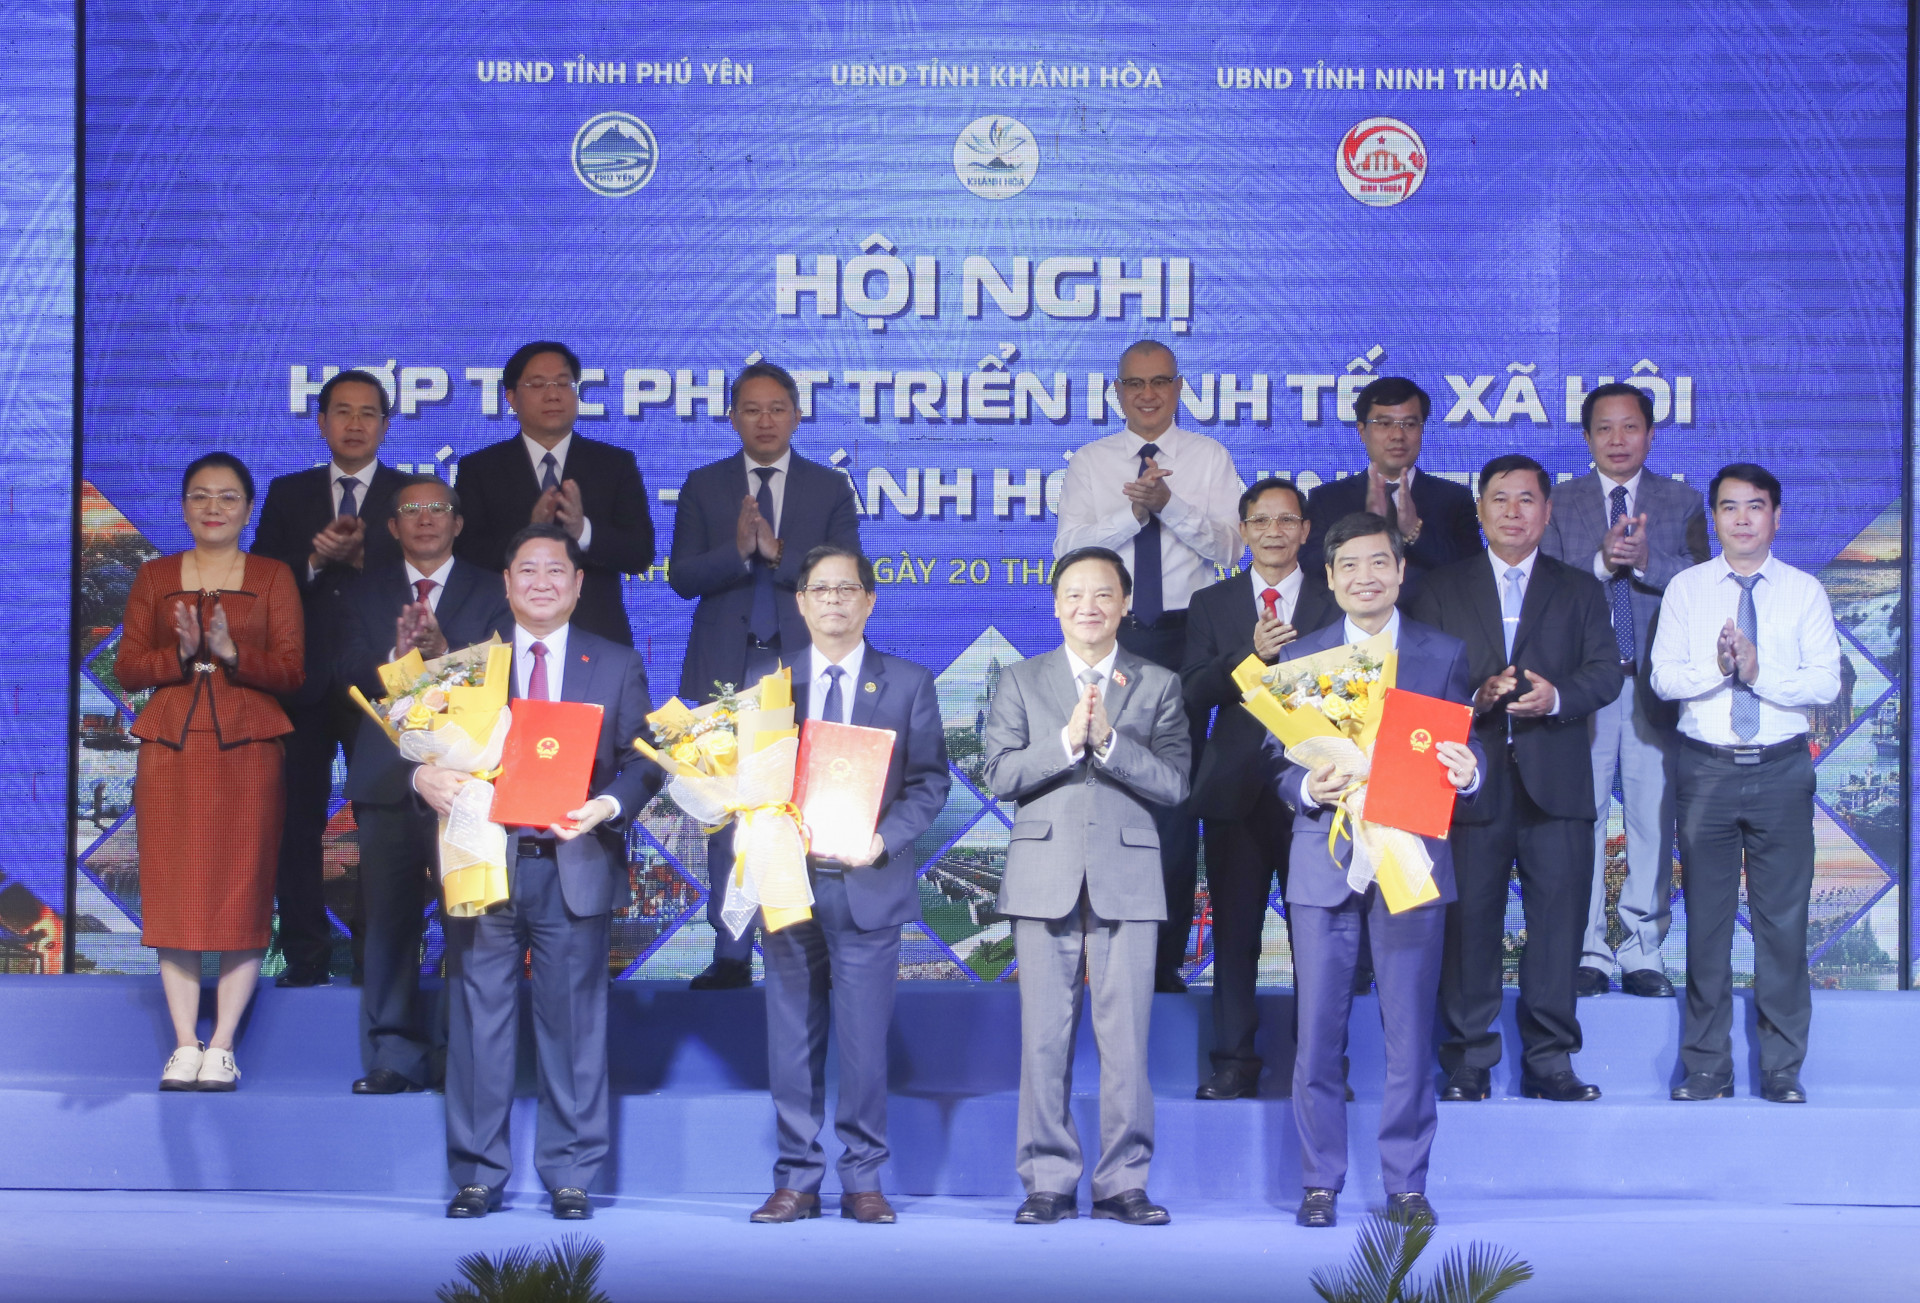 Chủ tịch Quốc hội Nguyễn Khắc Định tặng hoa chúc mừng 3 địa phương ký kết hợp tác phát triển.